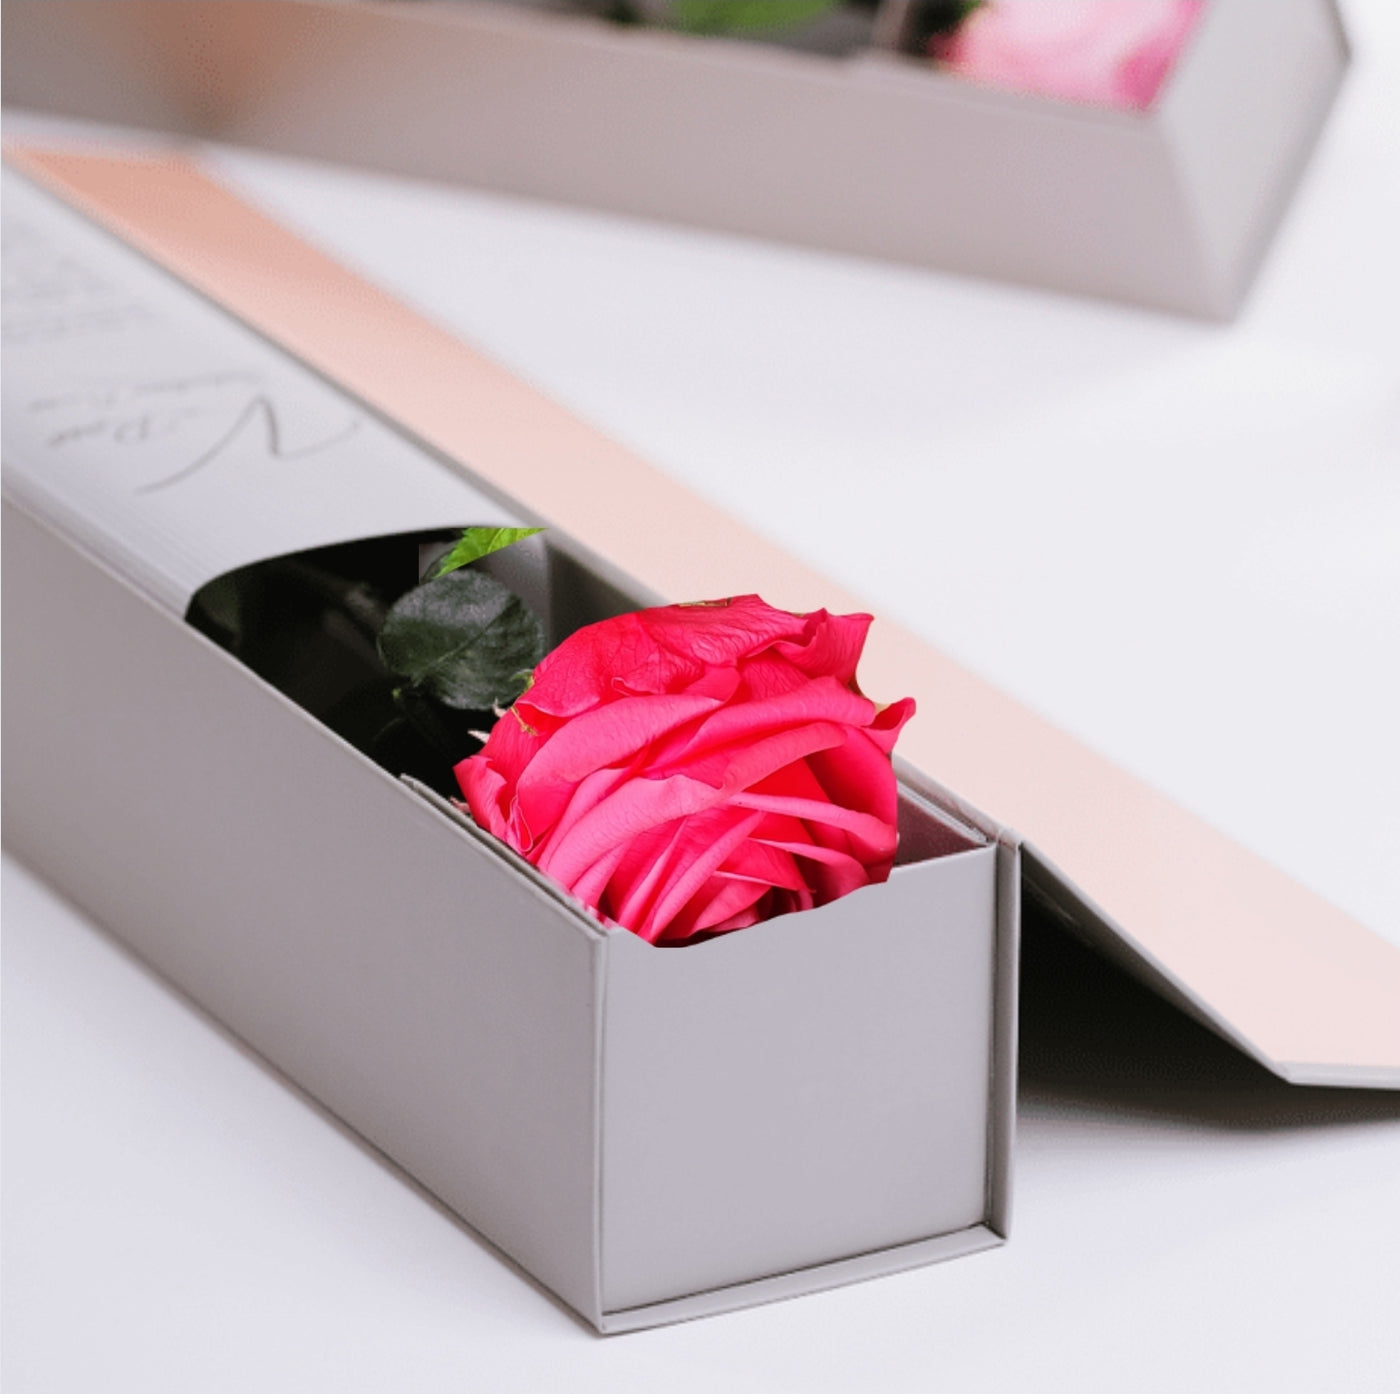 Rose stabilisée rose foncé sur tige dans sa boite Ateliers Ouchamp